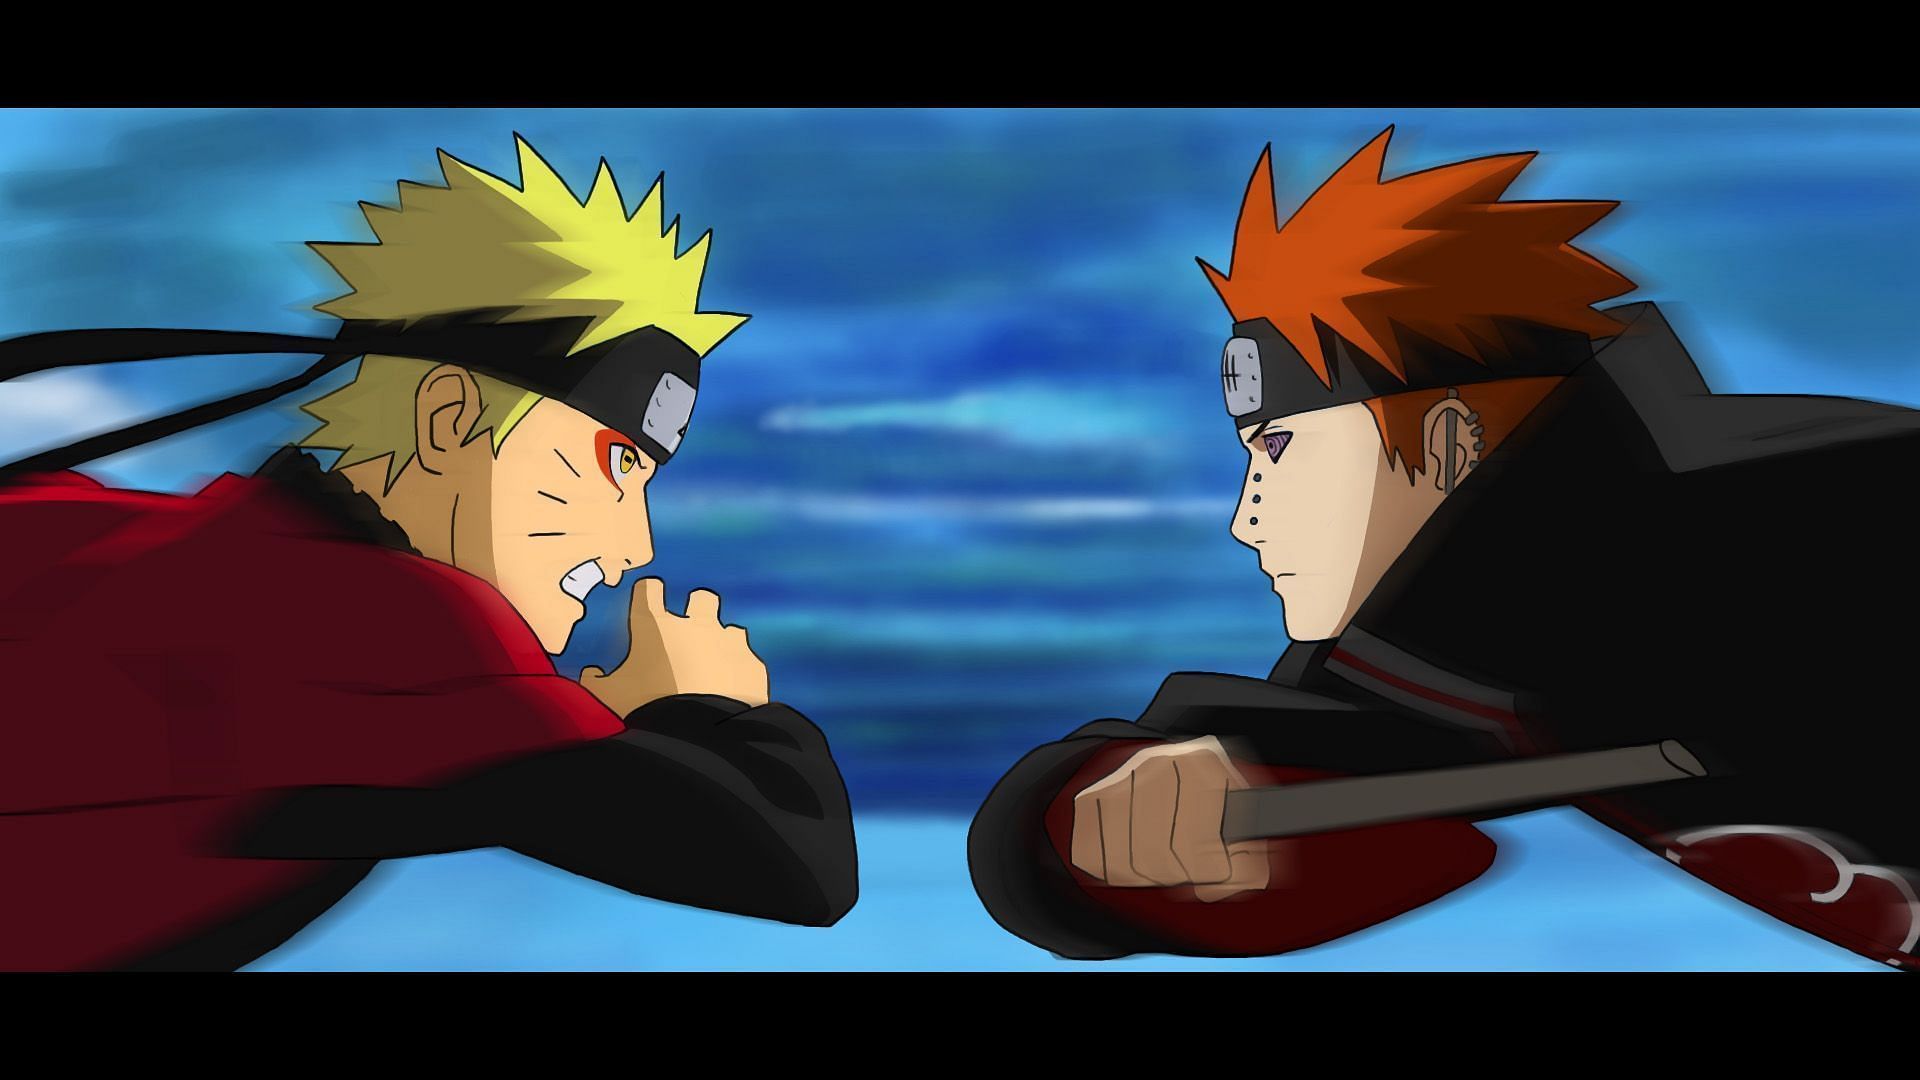 Naruto vs Pain (Image via Studio Pierrot)